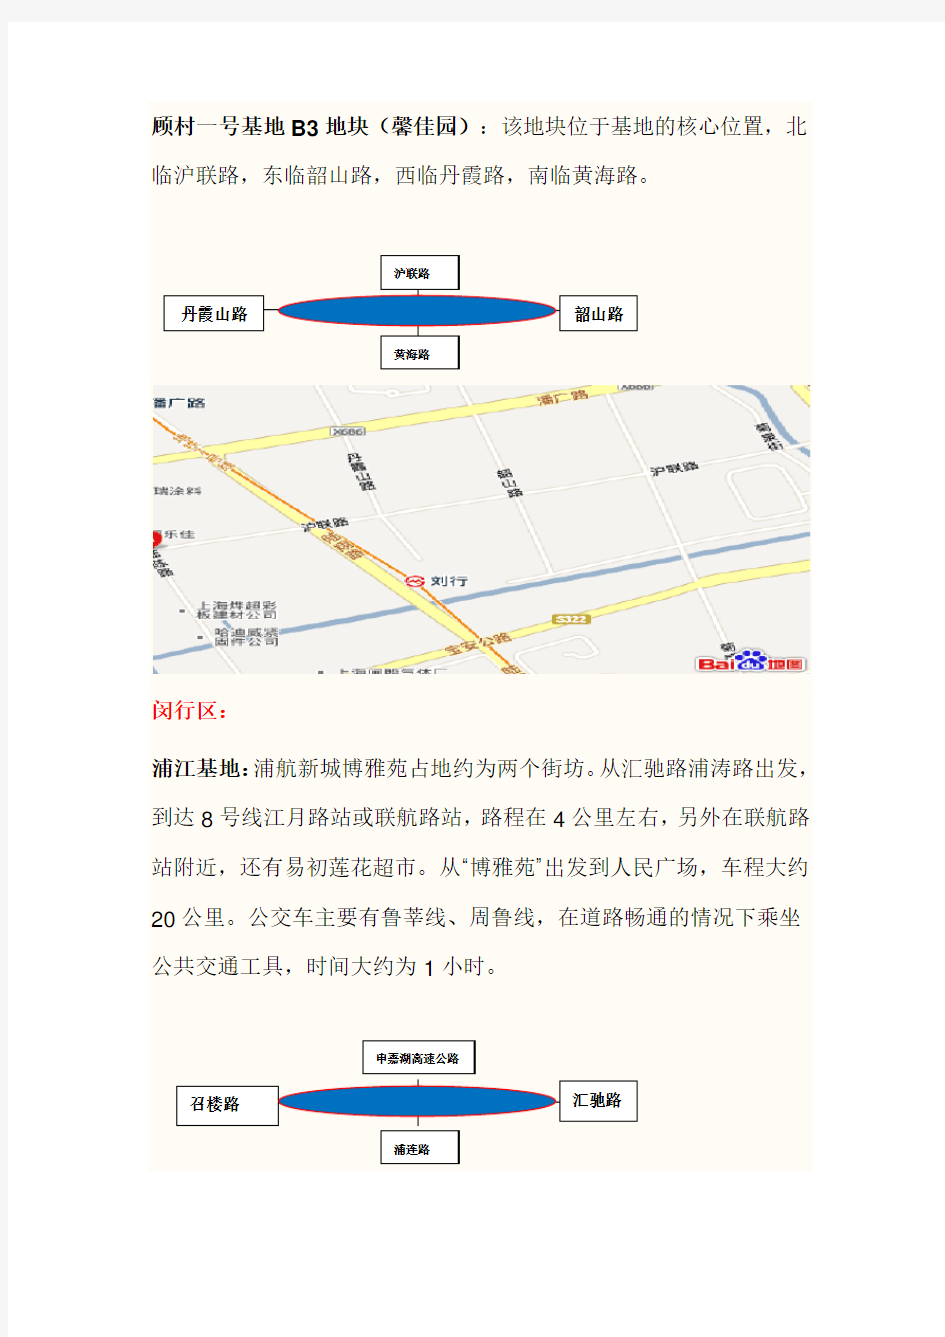 上海市经济适用房的分布位置及示意图